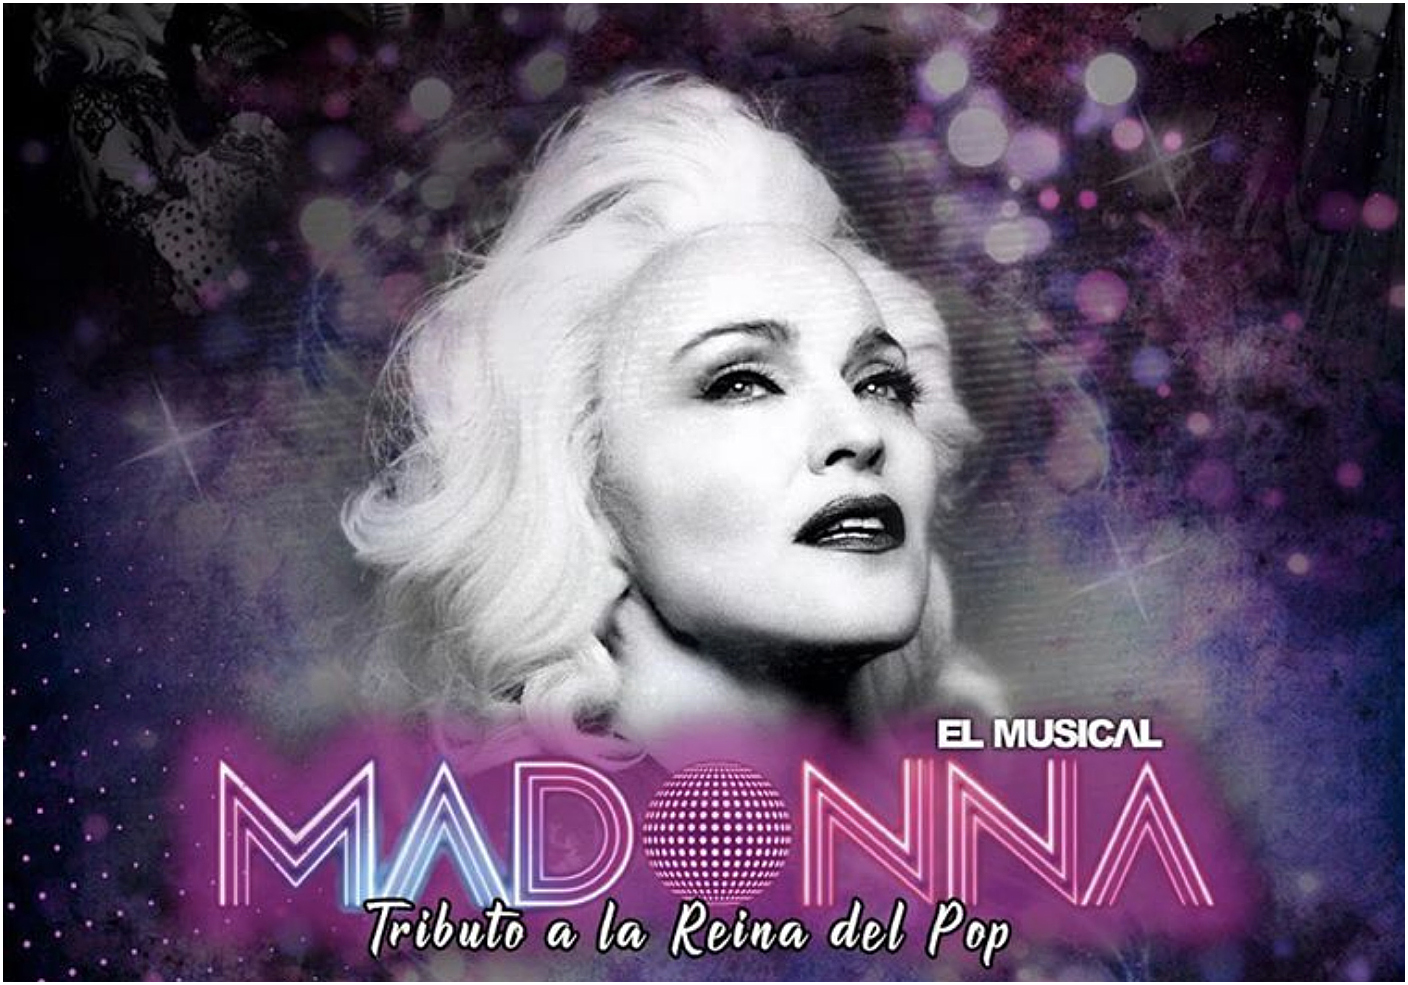 AUDICIÓN – MADONNA, EL MUSICAL ‘Tributo a la reina del pop’